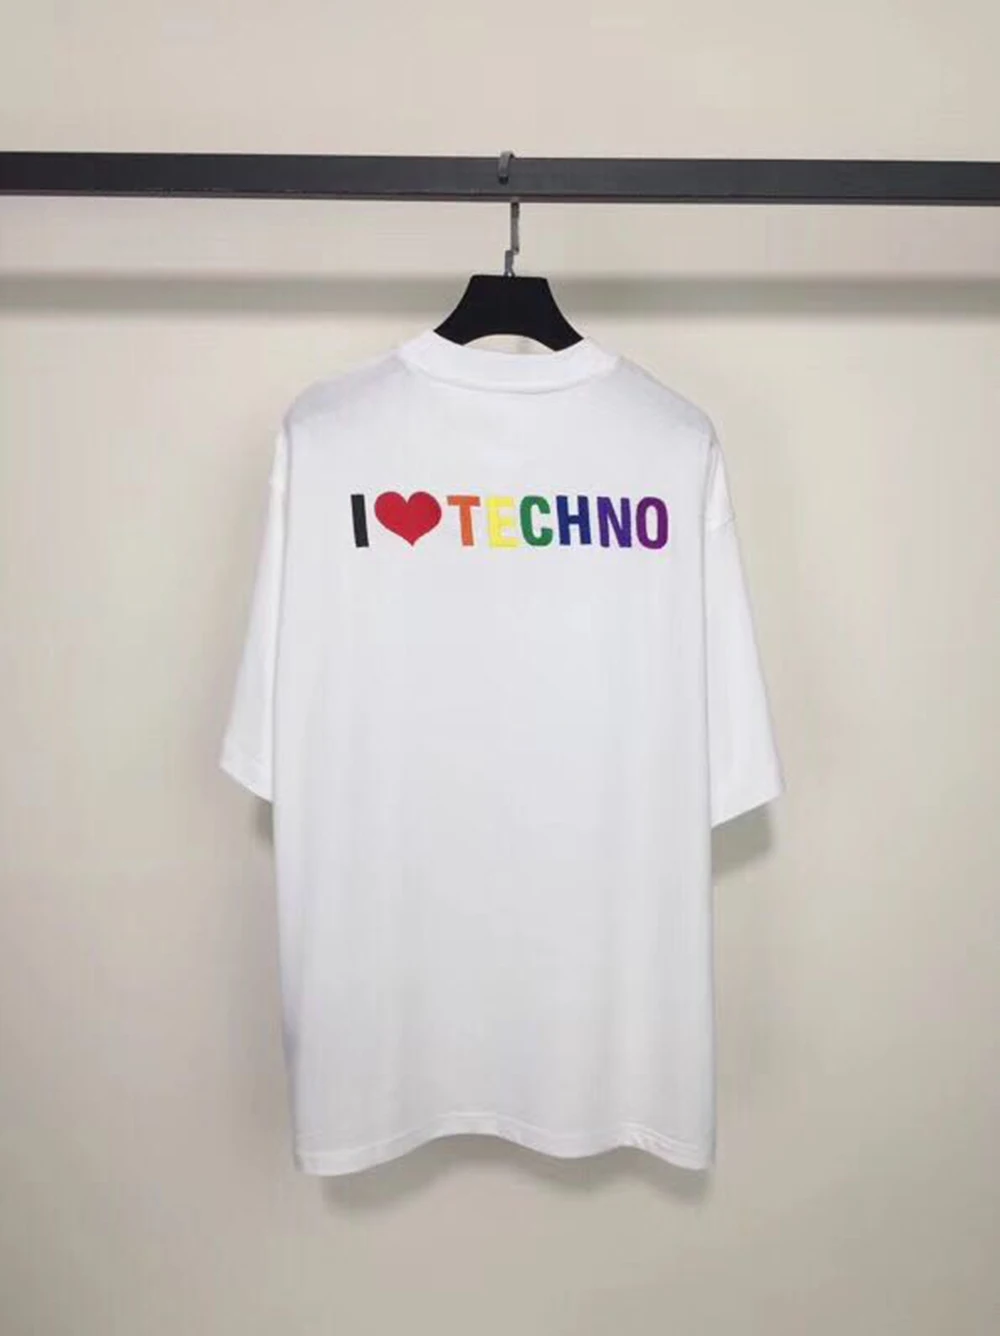 DUYOU 19ss мужские и женские дизайнерские футболки футболка большого размера с надписью I Love Techno летние футболки с короткими рукавами из хлопка